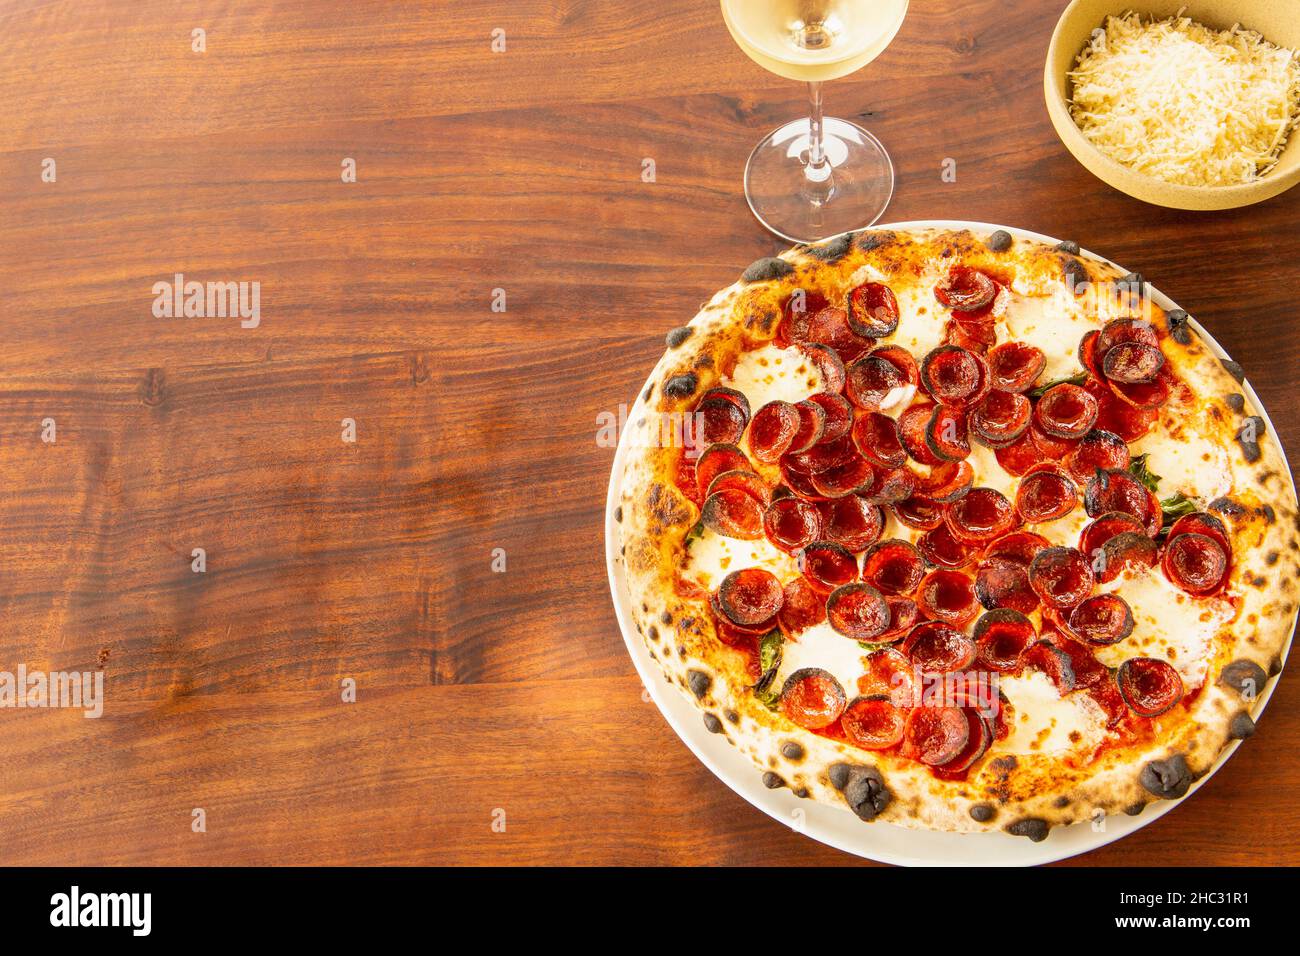 pizza de pepperoni y un vaso de chardonnay Foto de stock